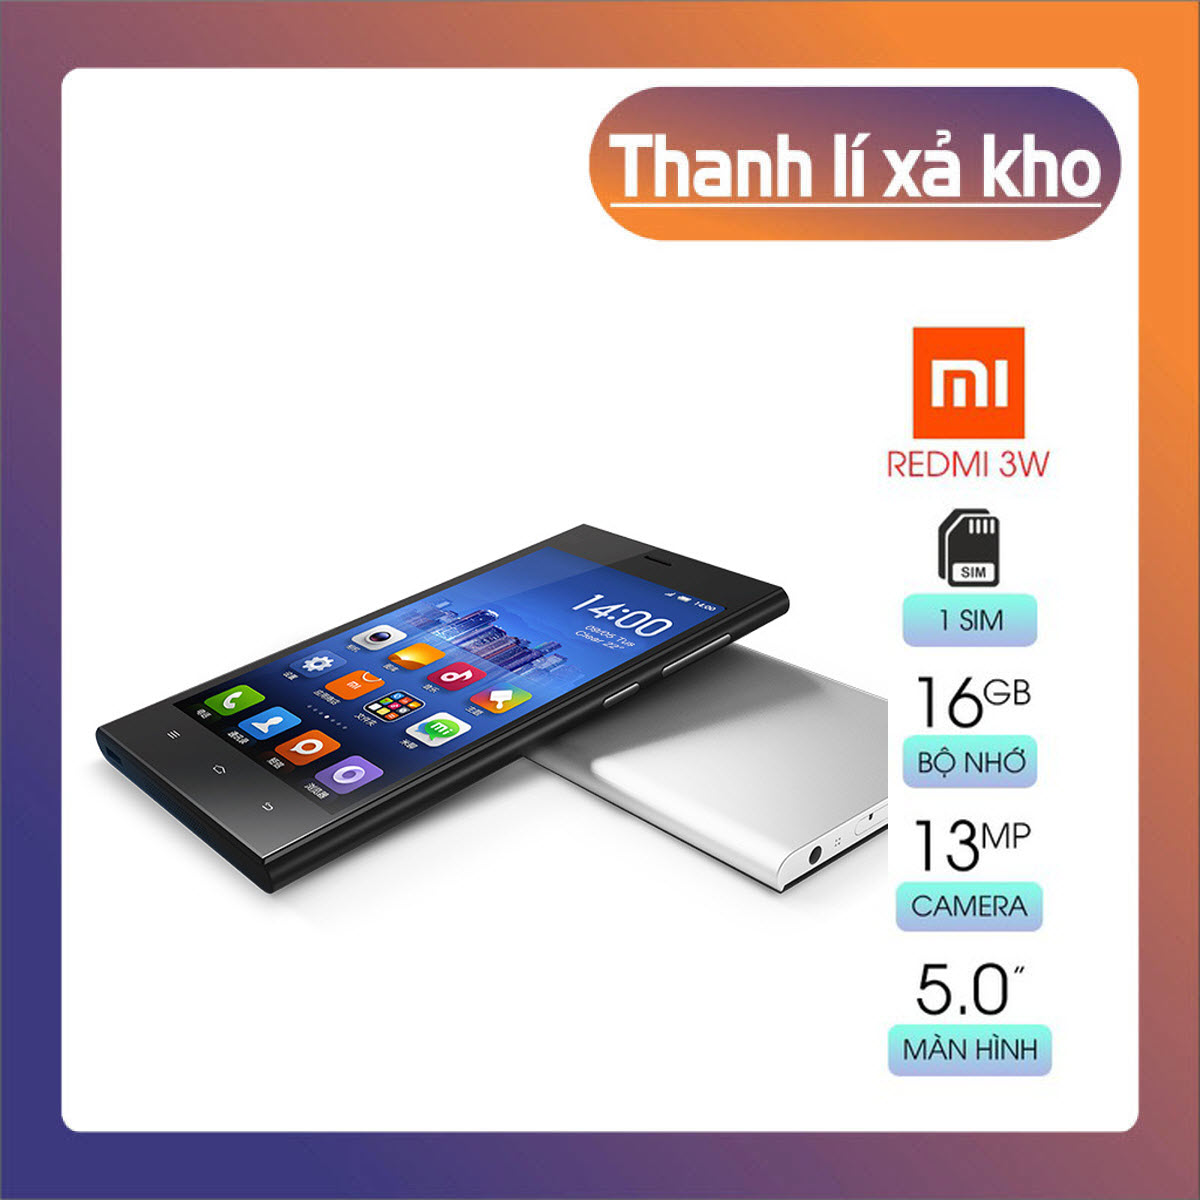 HCM]Điện thoại Xiaomi Redmi 3W Ram 2G/16G mới Có Tiếng Việt chơi ...